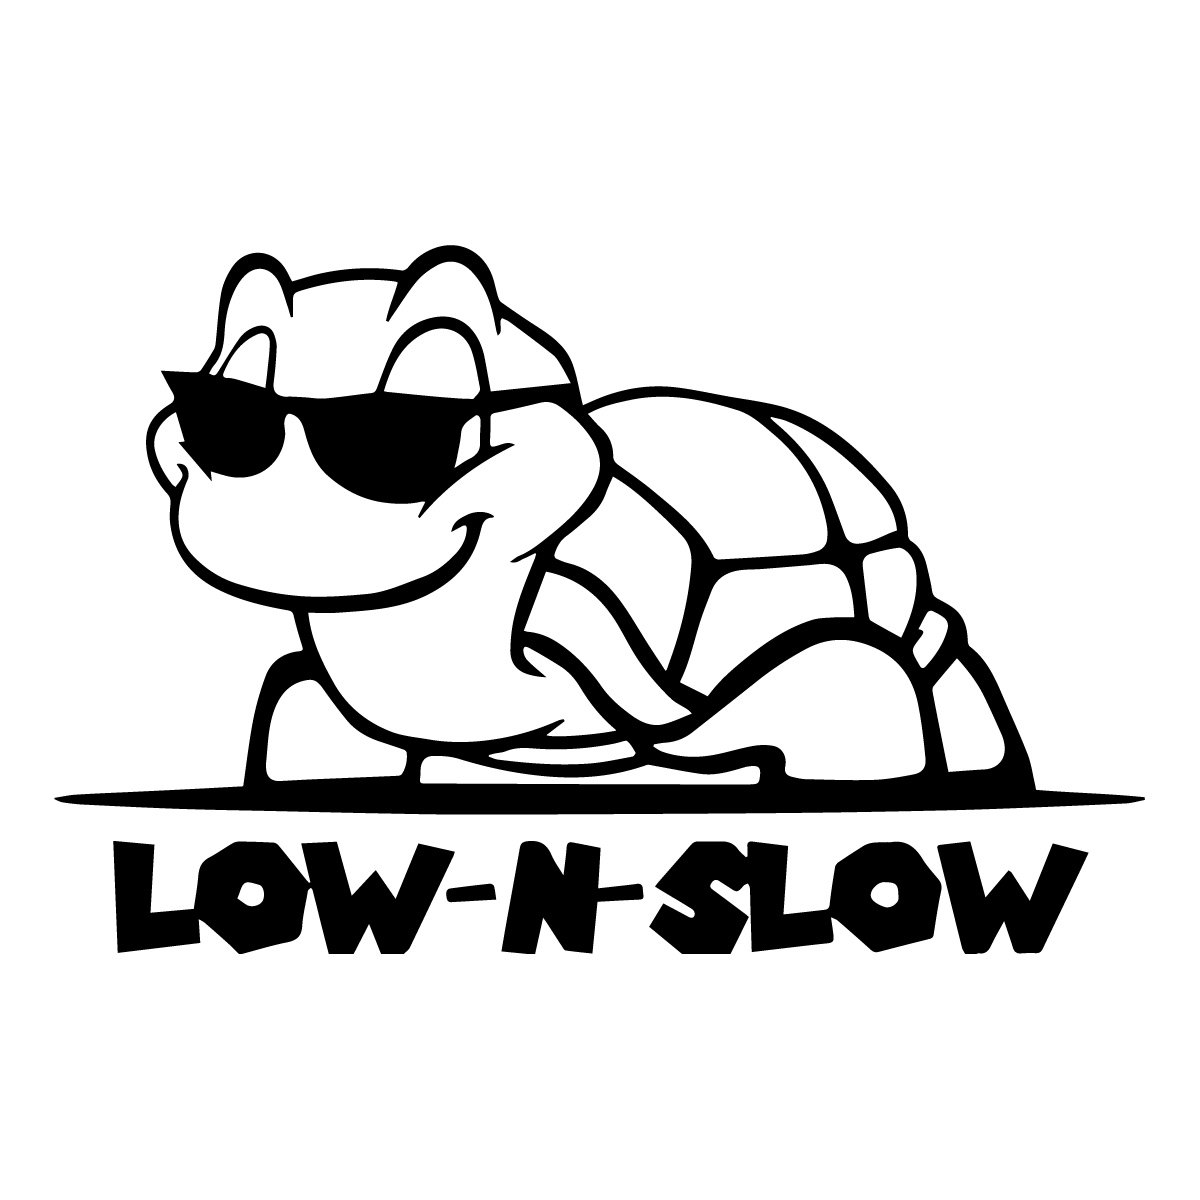 low n slow turtle